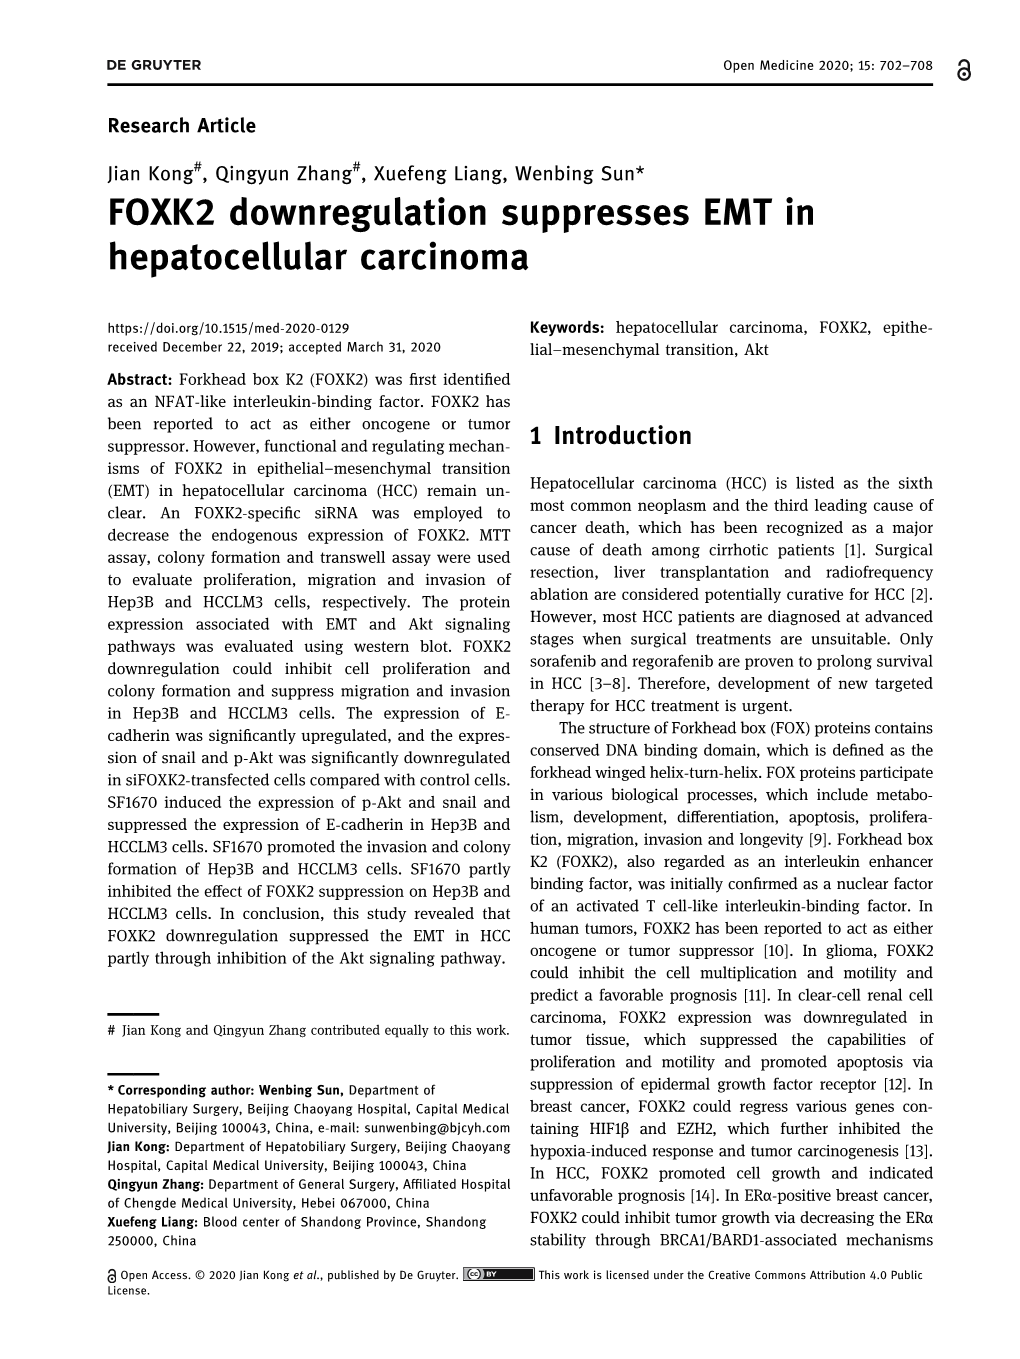 FOXK2 Downregulation Suppresses EMT in Hepatocellular Carcinoma